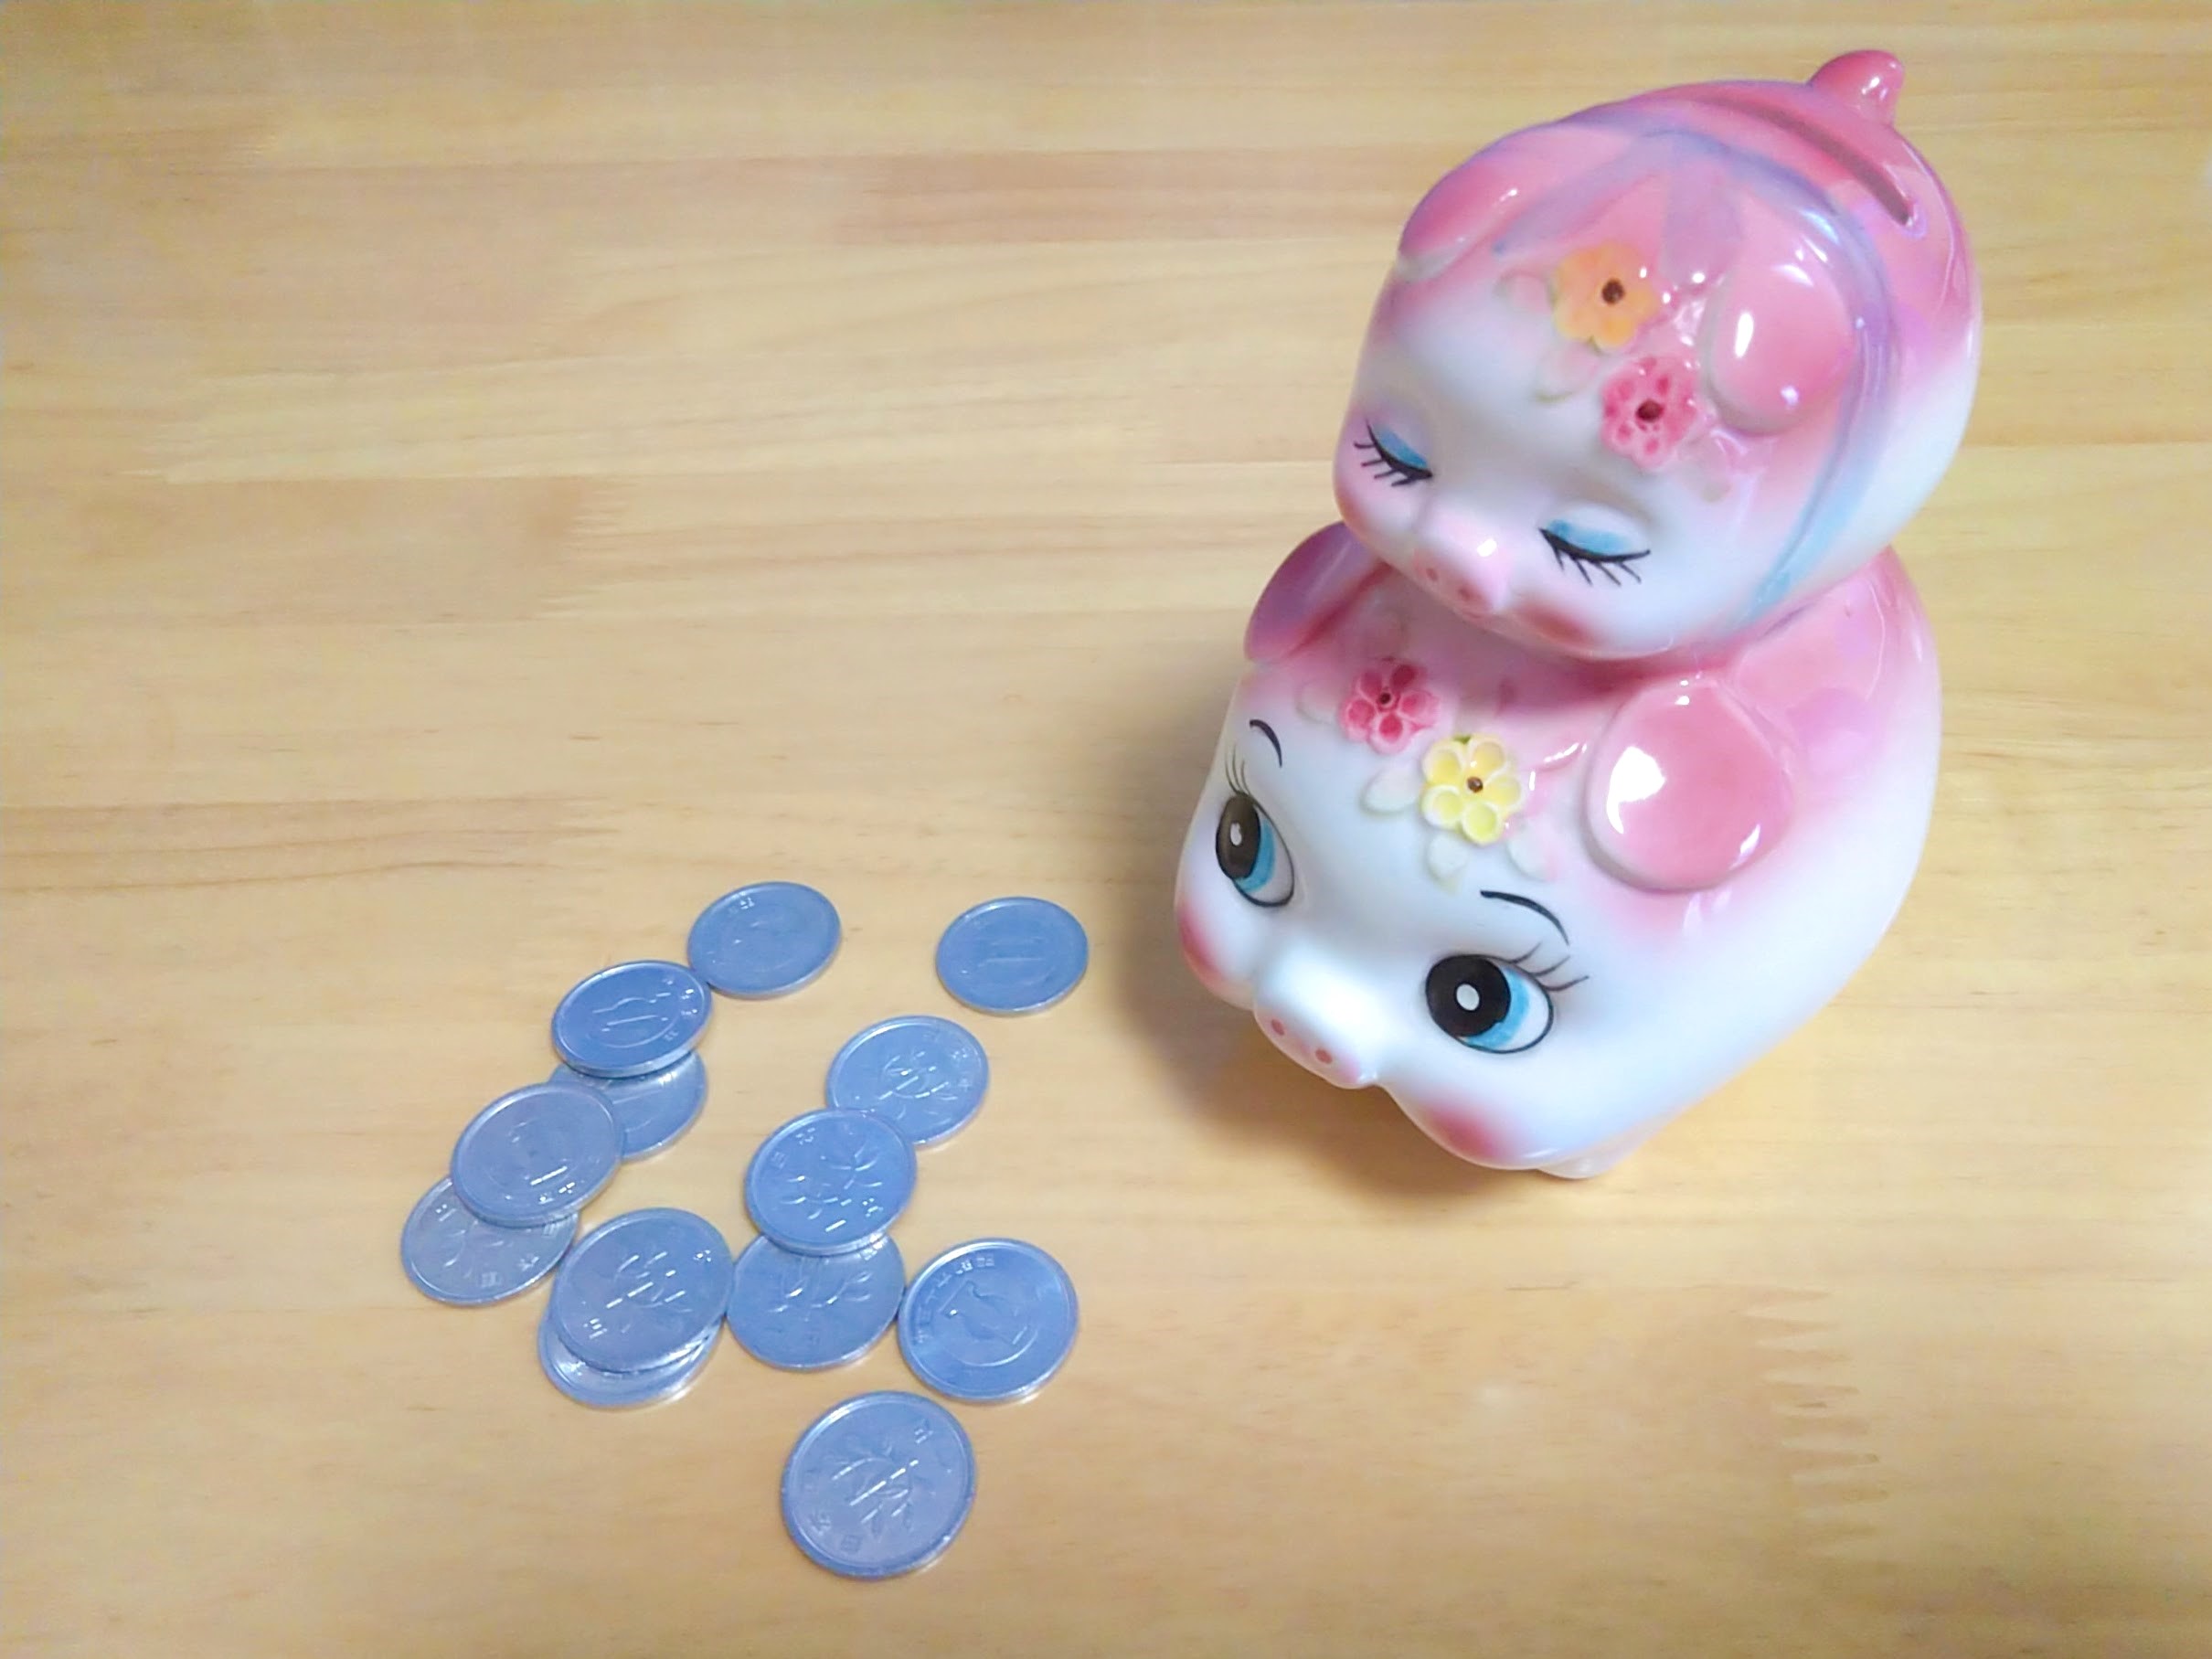 13円分の1円玉と豚の貯金箱の写真